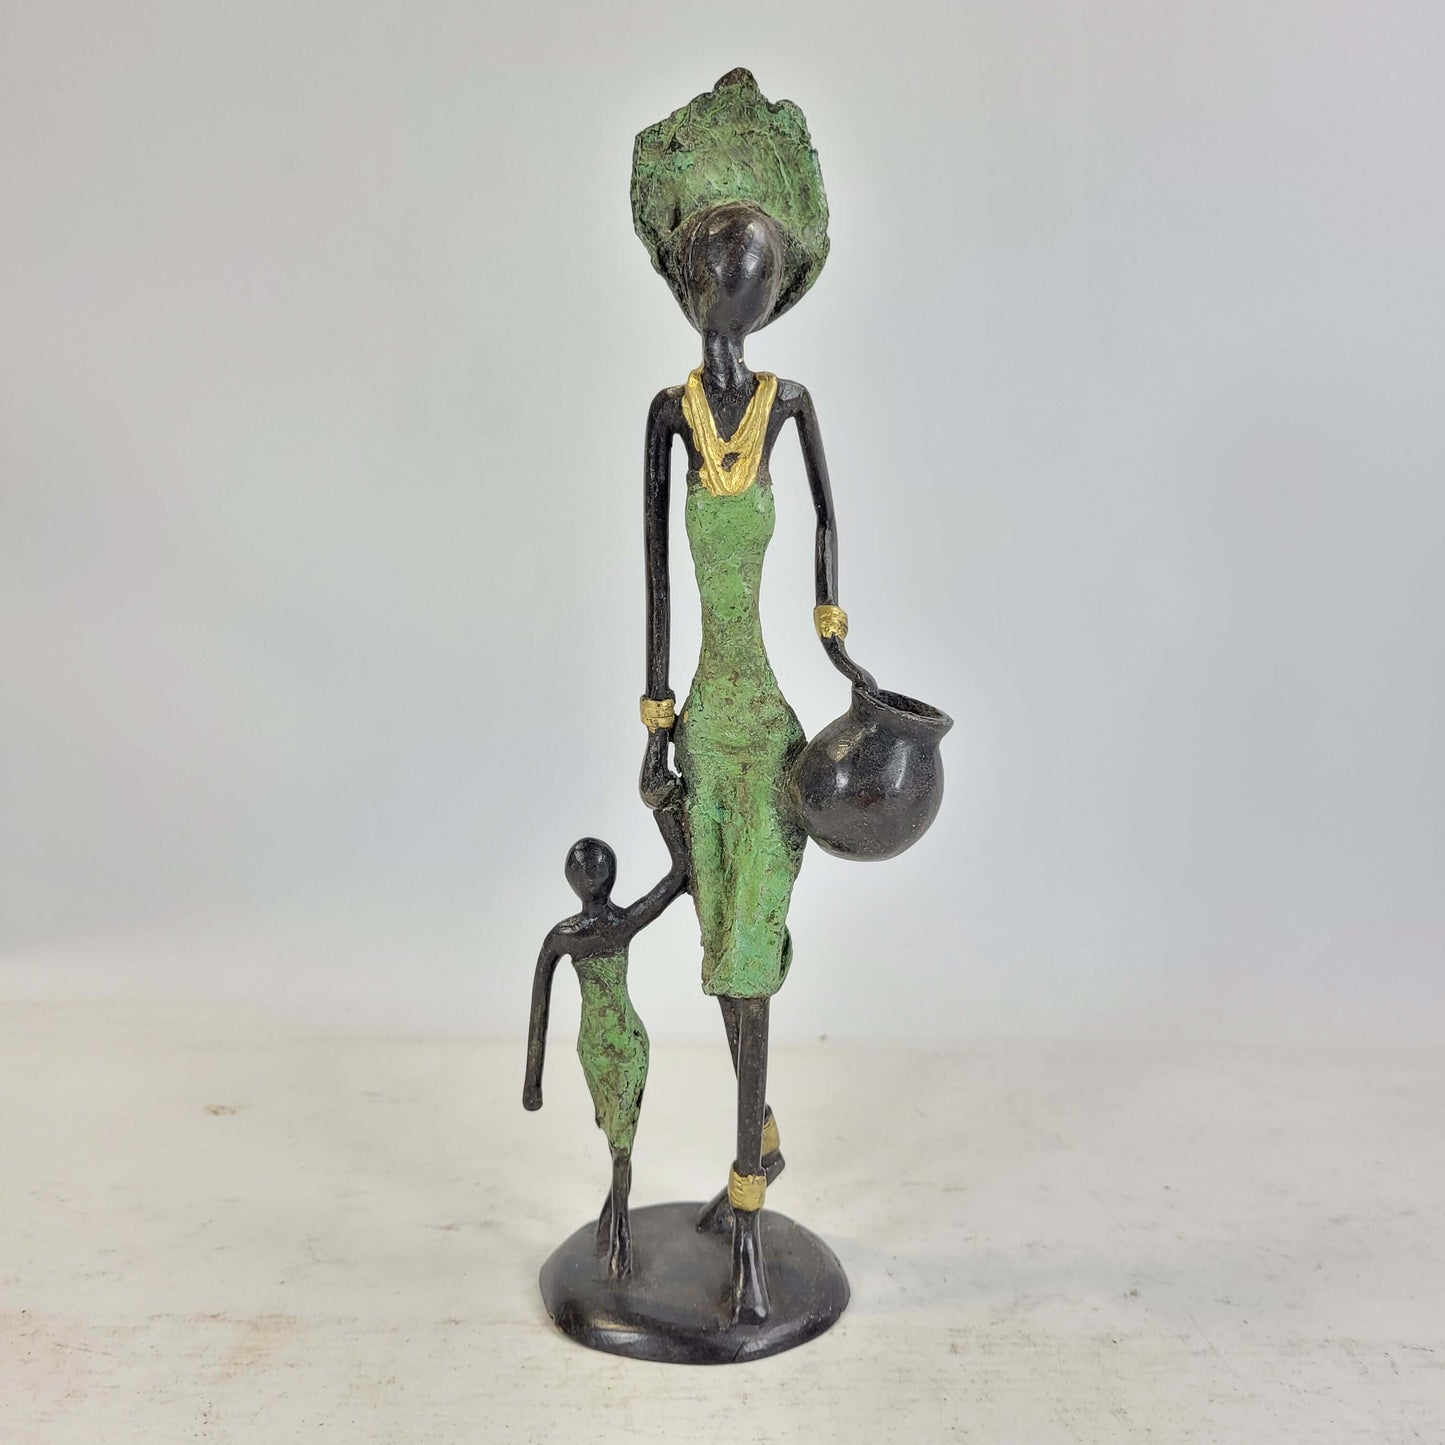 Bronze-Skulptur "Frau mit Amphora und Kind an der Hand" by Issouf | 25 cm